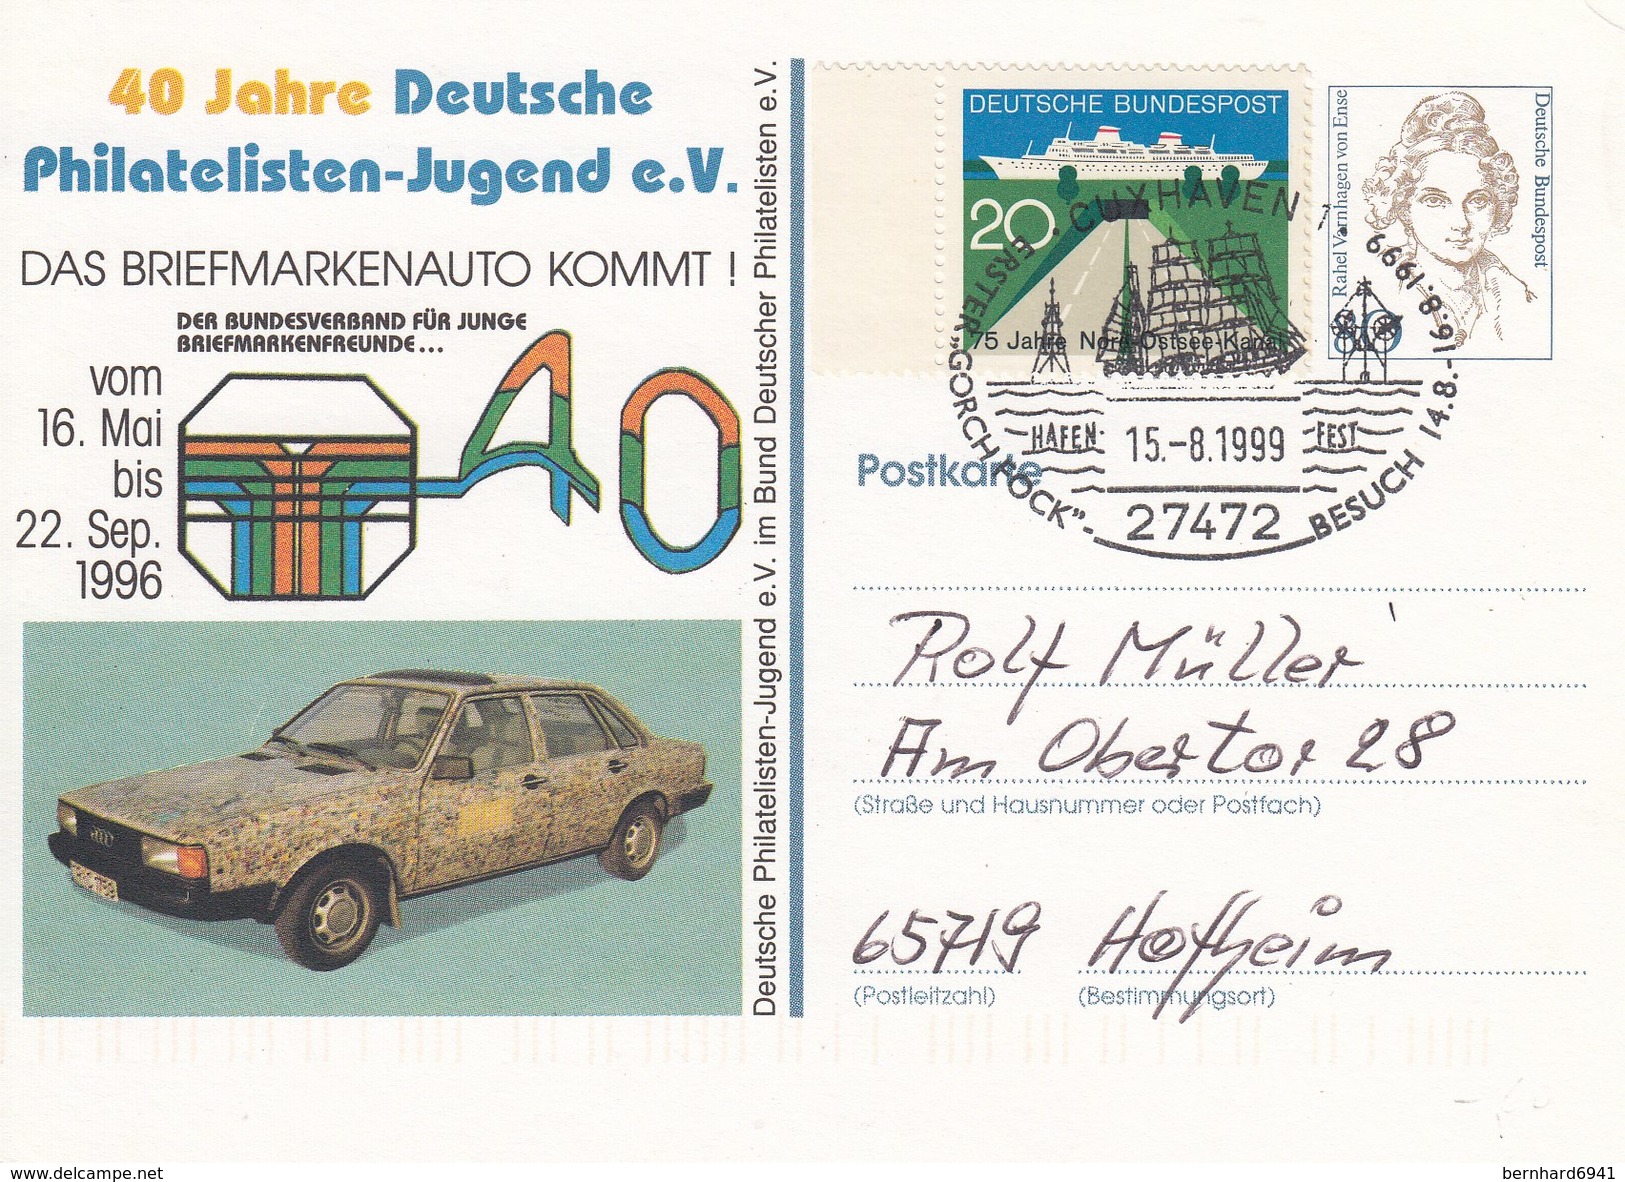 PP 170 D1/1a 40 Jahre Deutsche Philatelisten-Jugen E.V. - Das Briefmarkenauto Kommt!, Cuxhaven 1 - Private Postcards - Used